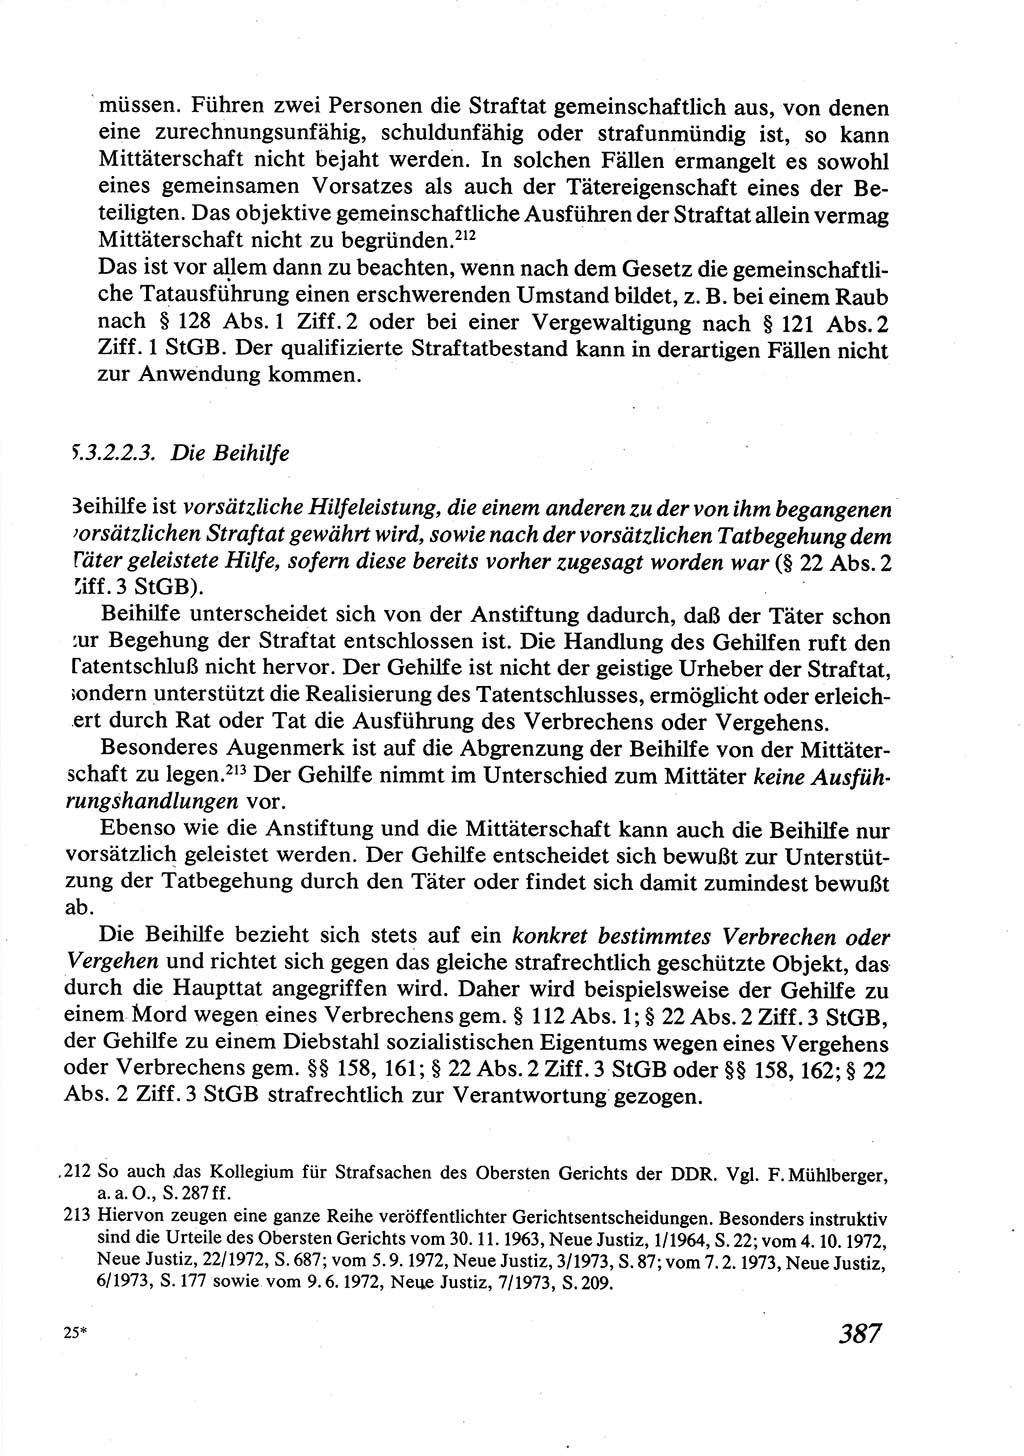 Strafrecht [Deutsche Demokratische Republik (DDR)], Allgemeiner Teil, Lehrbuch 1976, Seite 387 (Strafr. DDR AT Lb. 1976, S. 387)